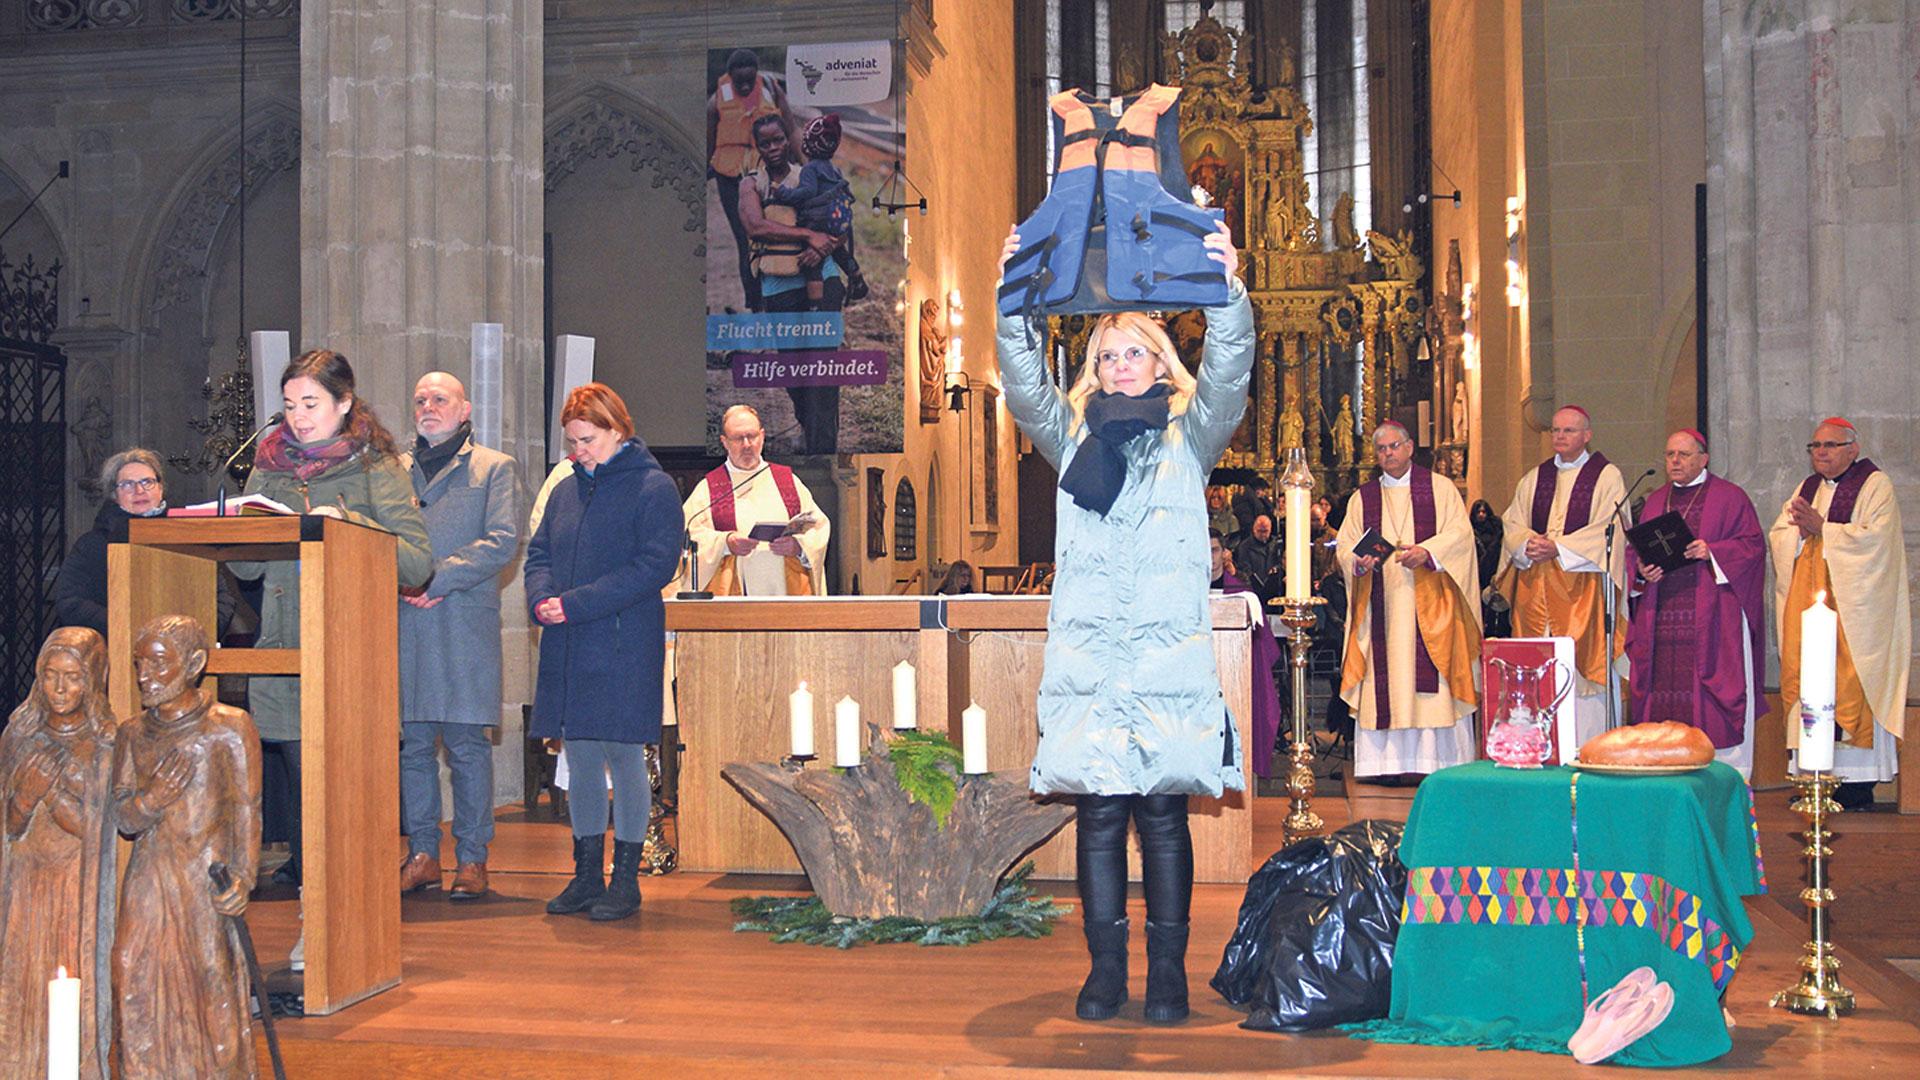 Messe des Hilfswerkes Adveniat im Dom Erfurt